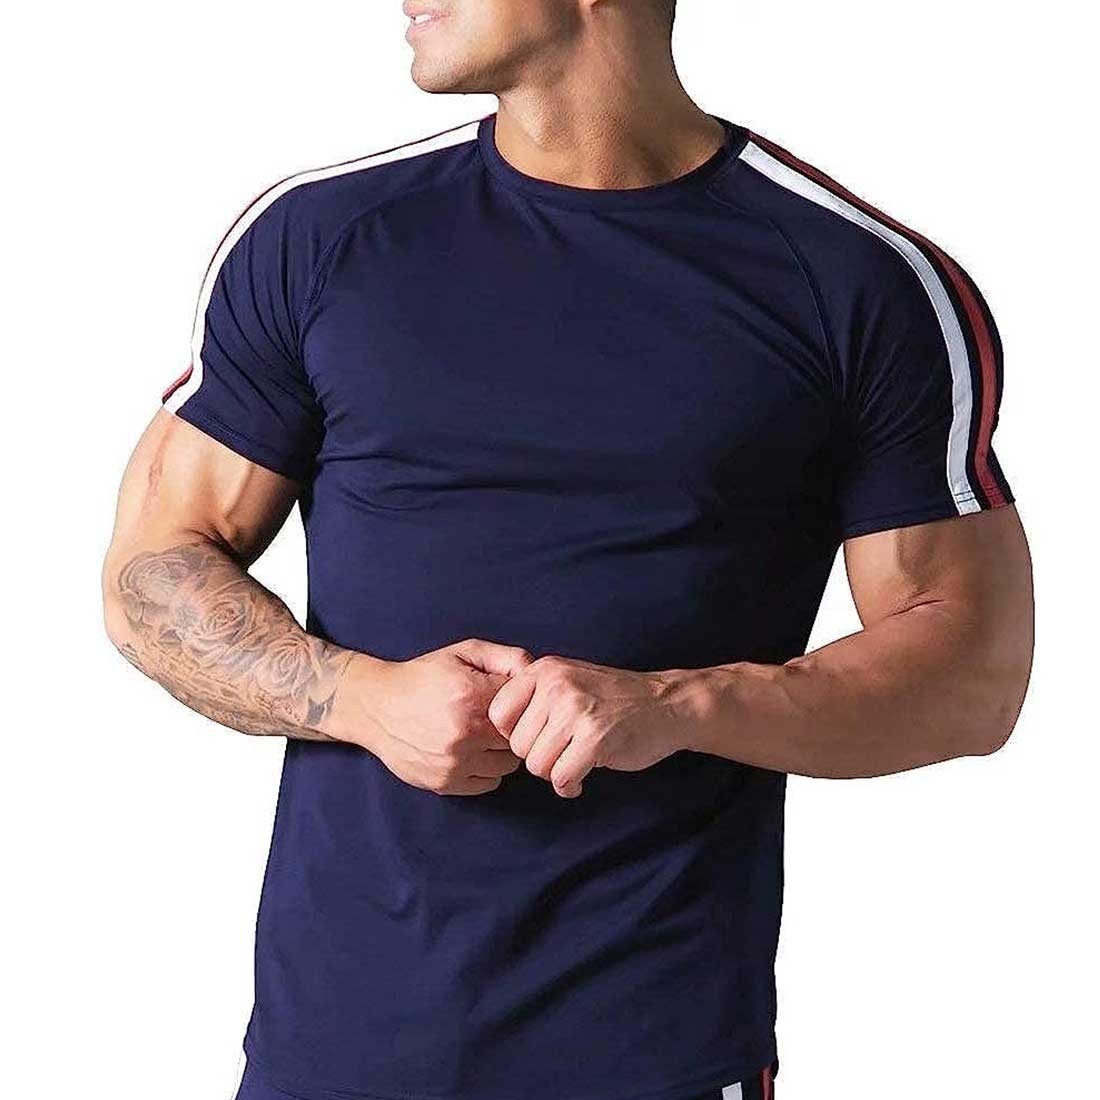 Tシャツ Mサイズ ネイビー トレーニングウェア メンズ ストレッチ 吸湿 速乾 スポーツウェア 筋力トレーニング_画像6